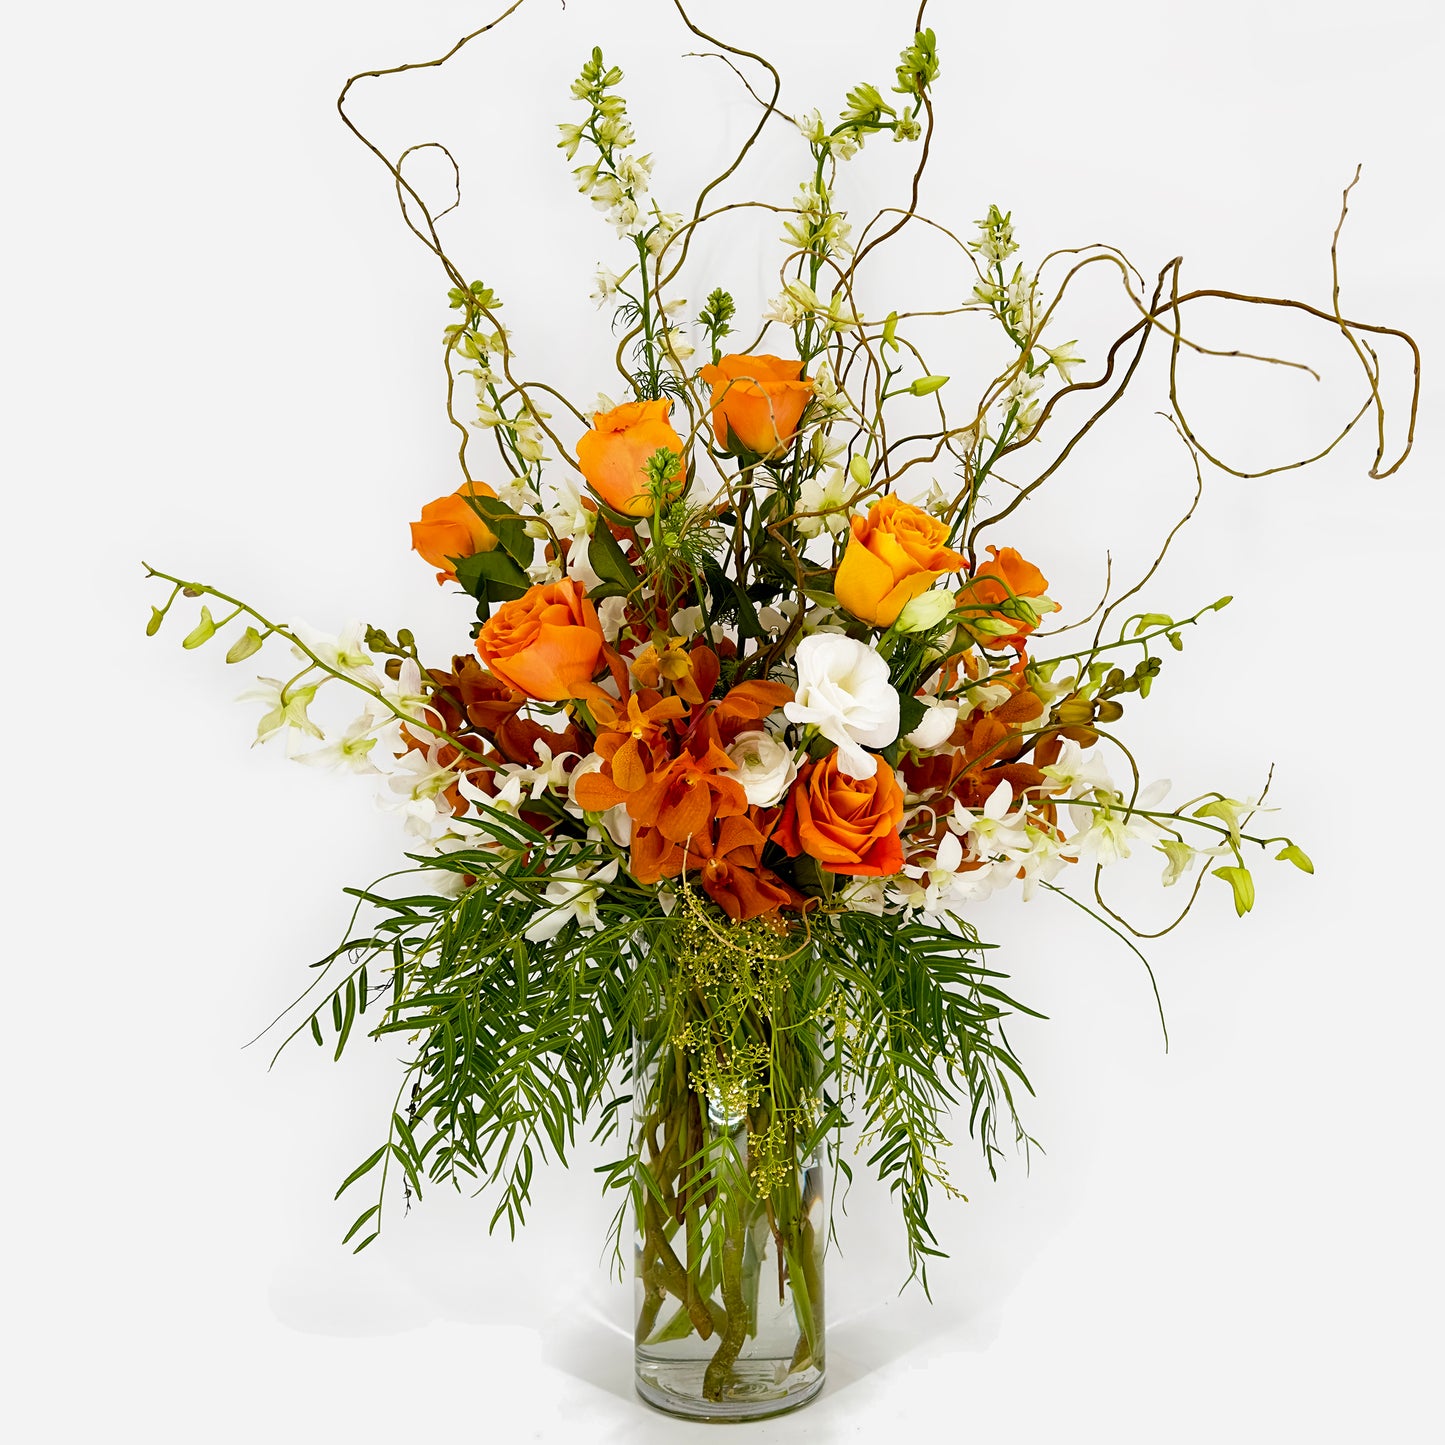 Flower arrangement - large. Order online for delivery or pickup in Santa Fe